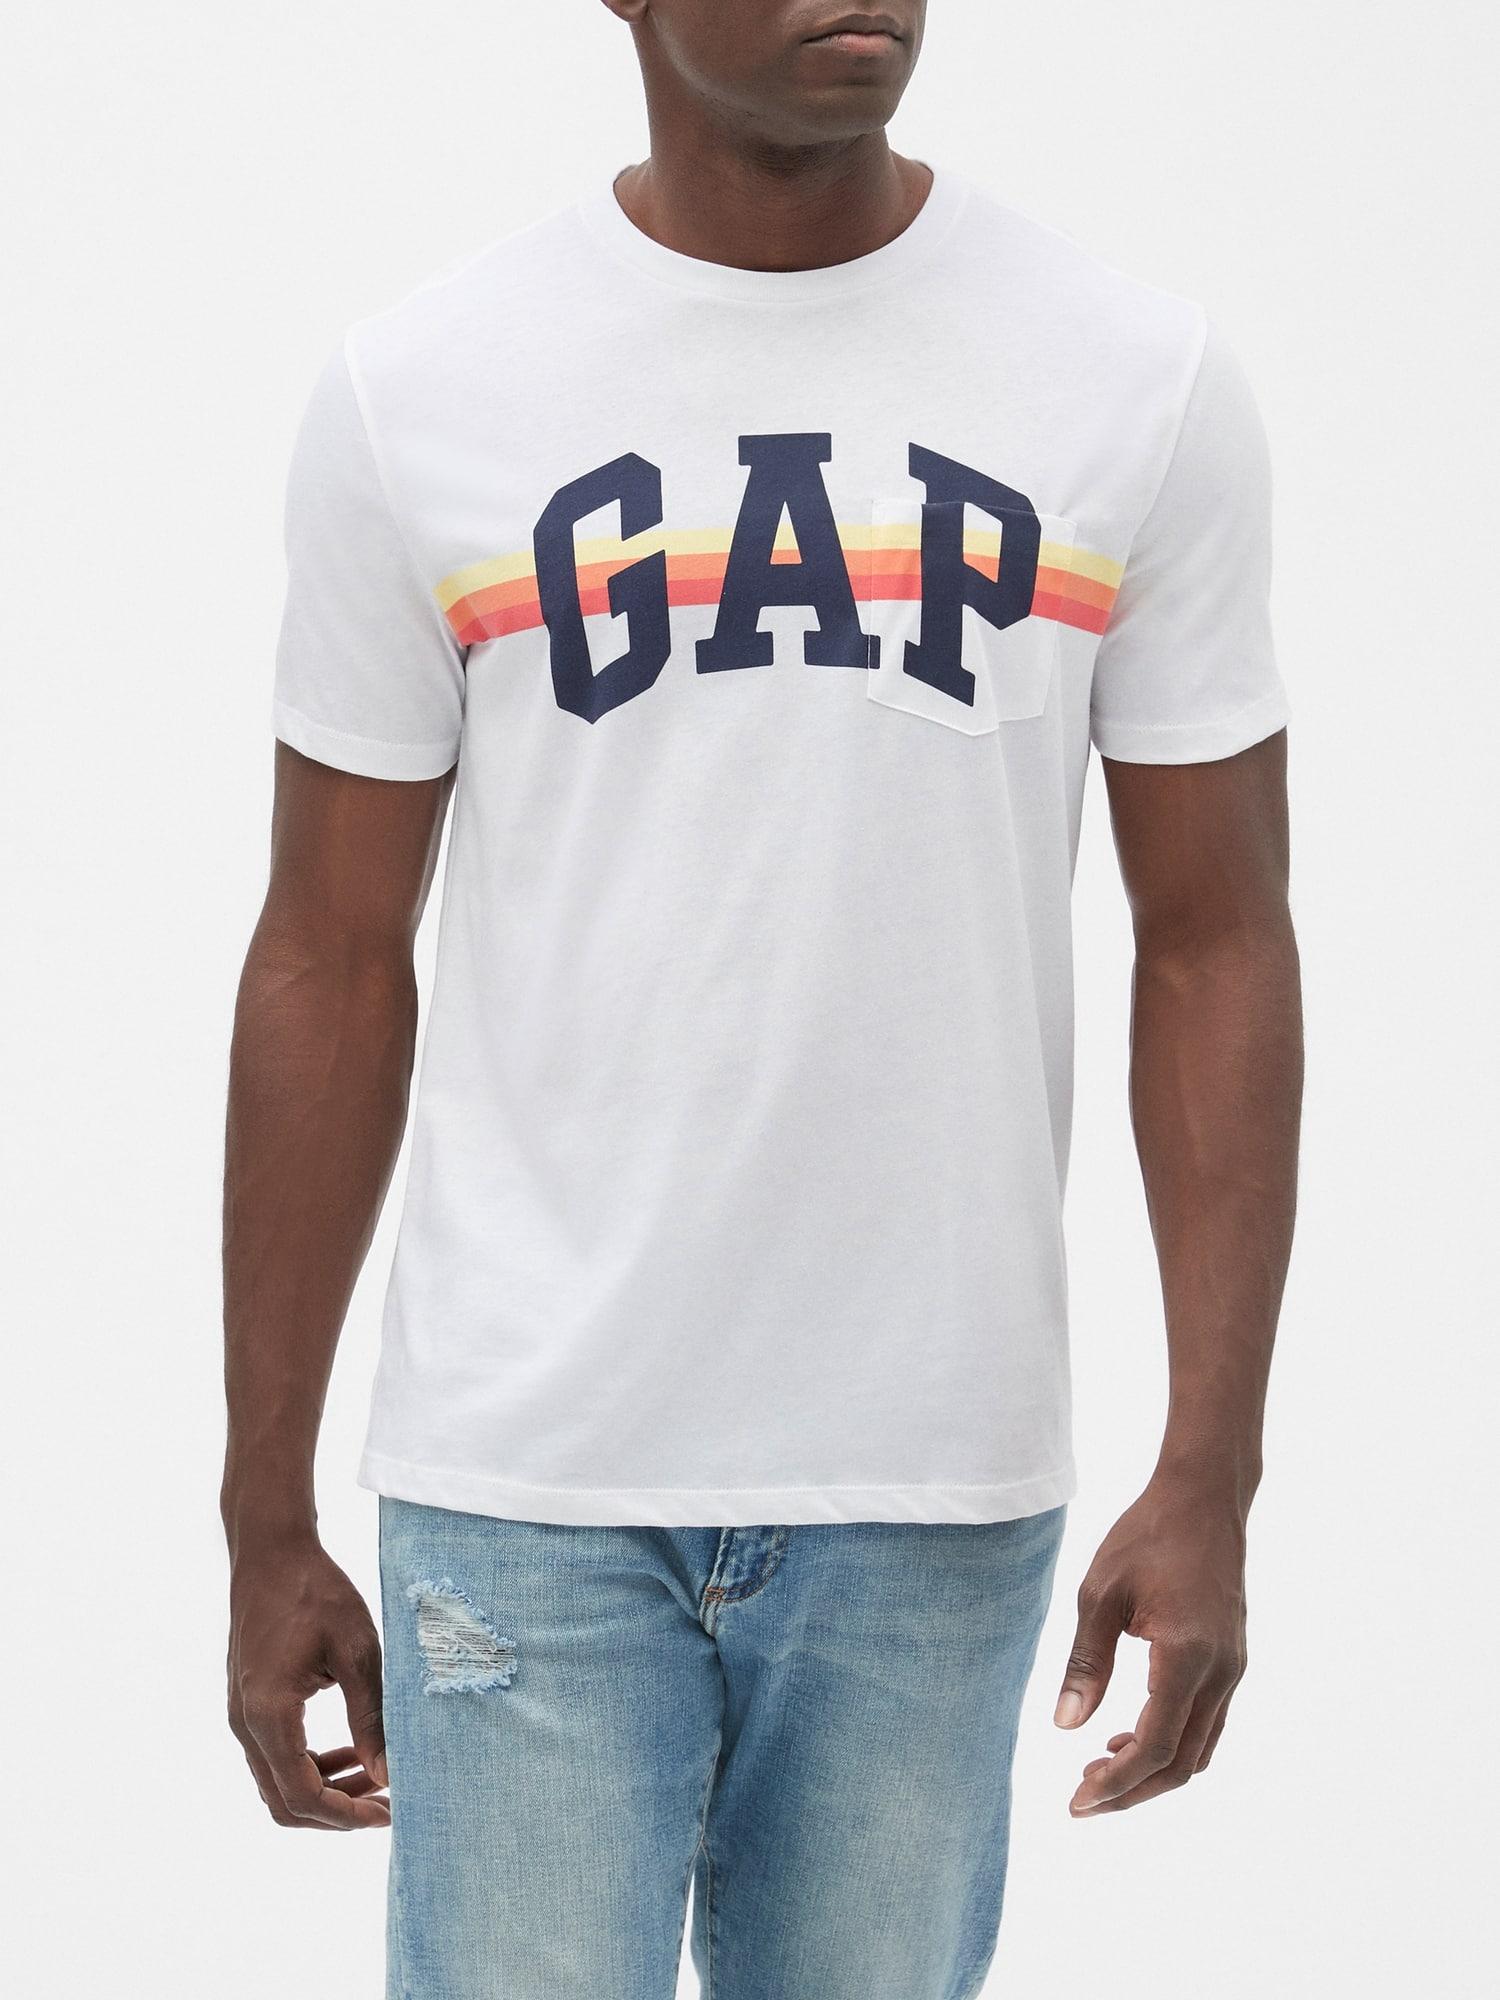 gap factory shirts